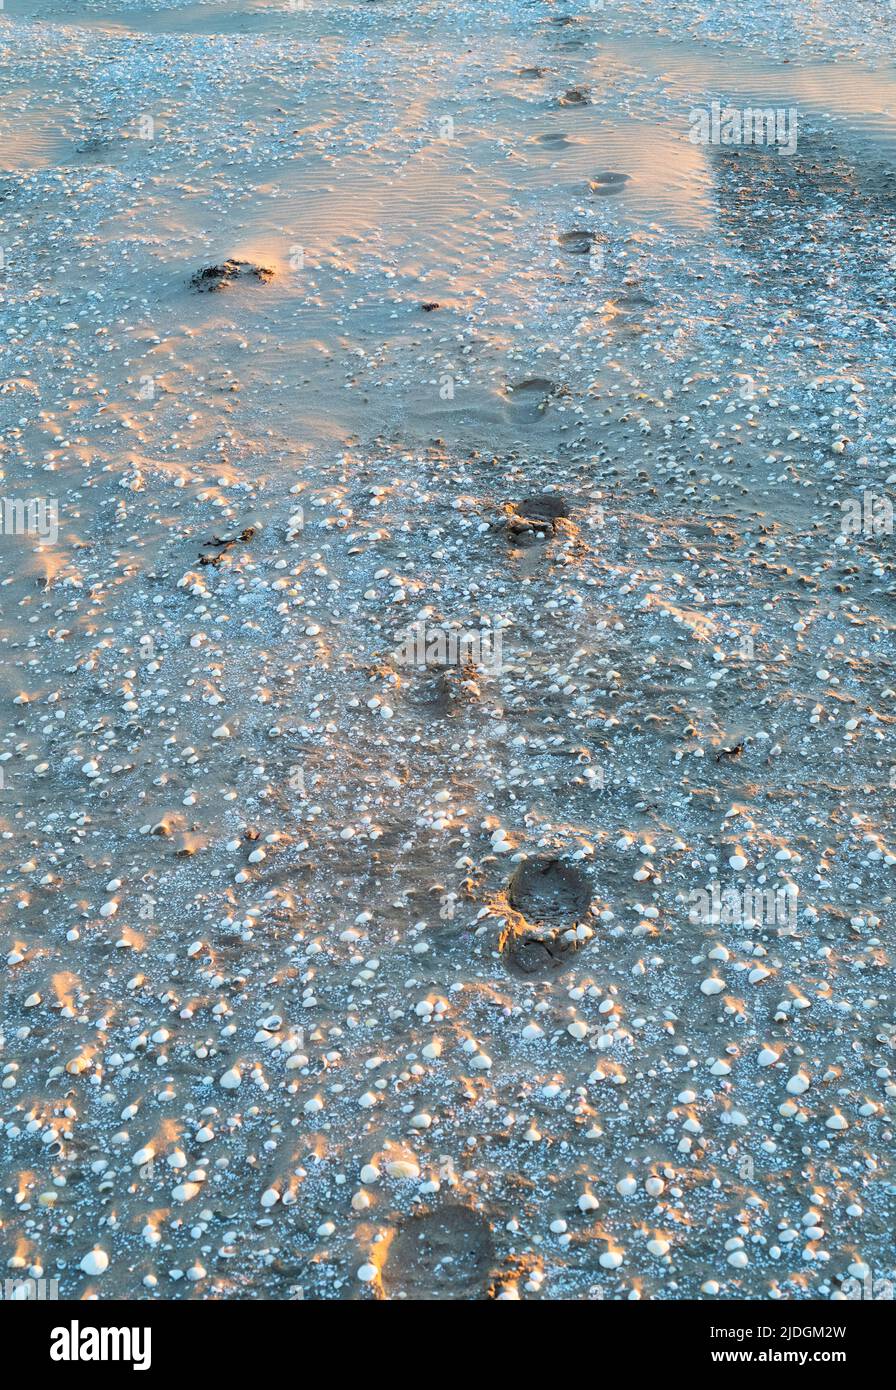 Empreintes de pieds dans la plage de sable, de coquillages au coucher du soleil. Southerness, Dumfries et Galloway, Écosse Banque D'Images